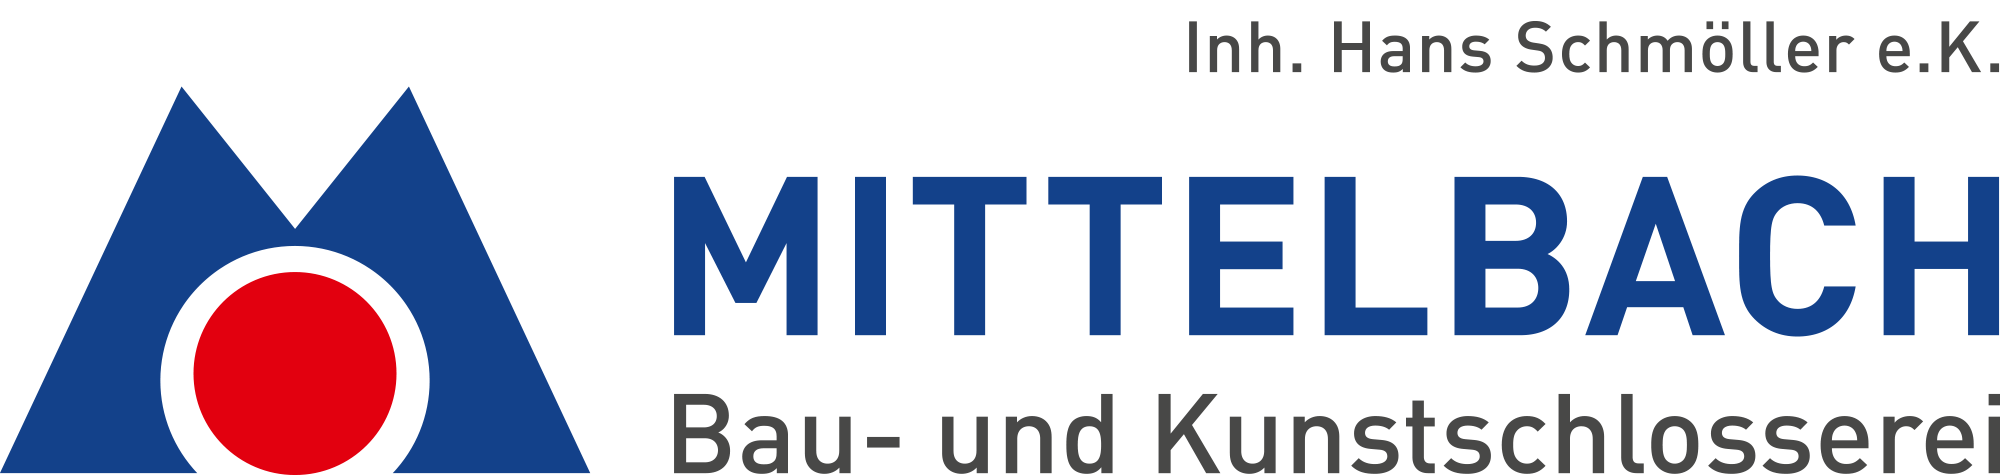 Metalldesign Mittelbach Logo